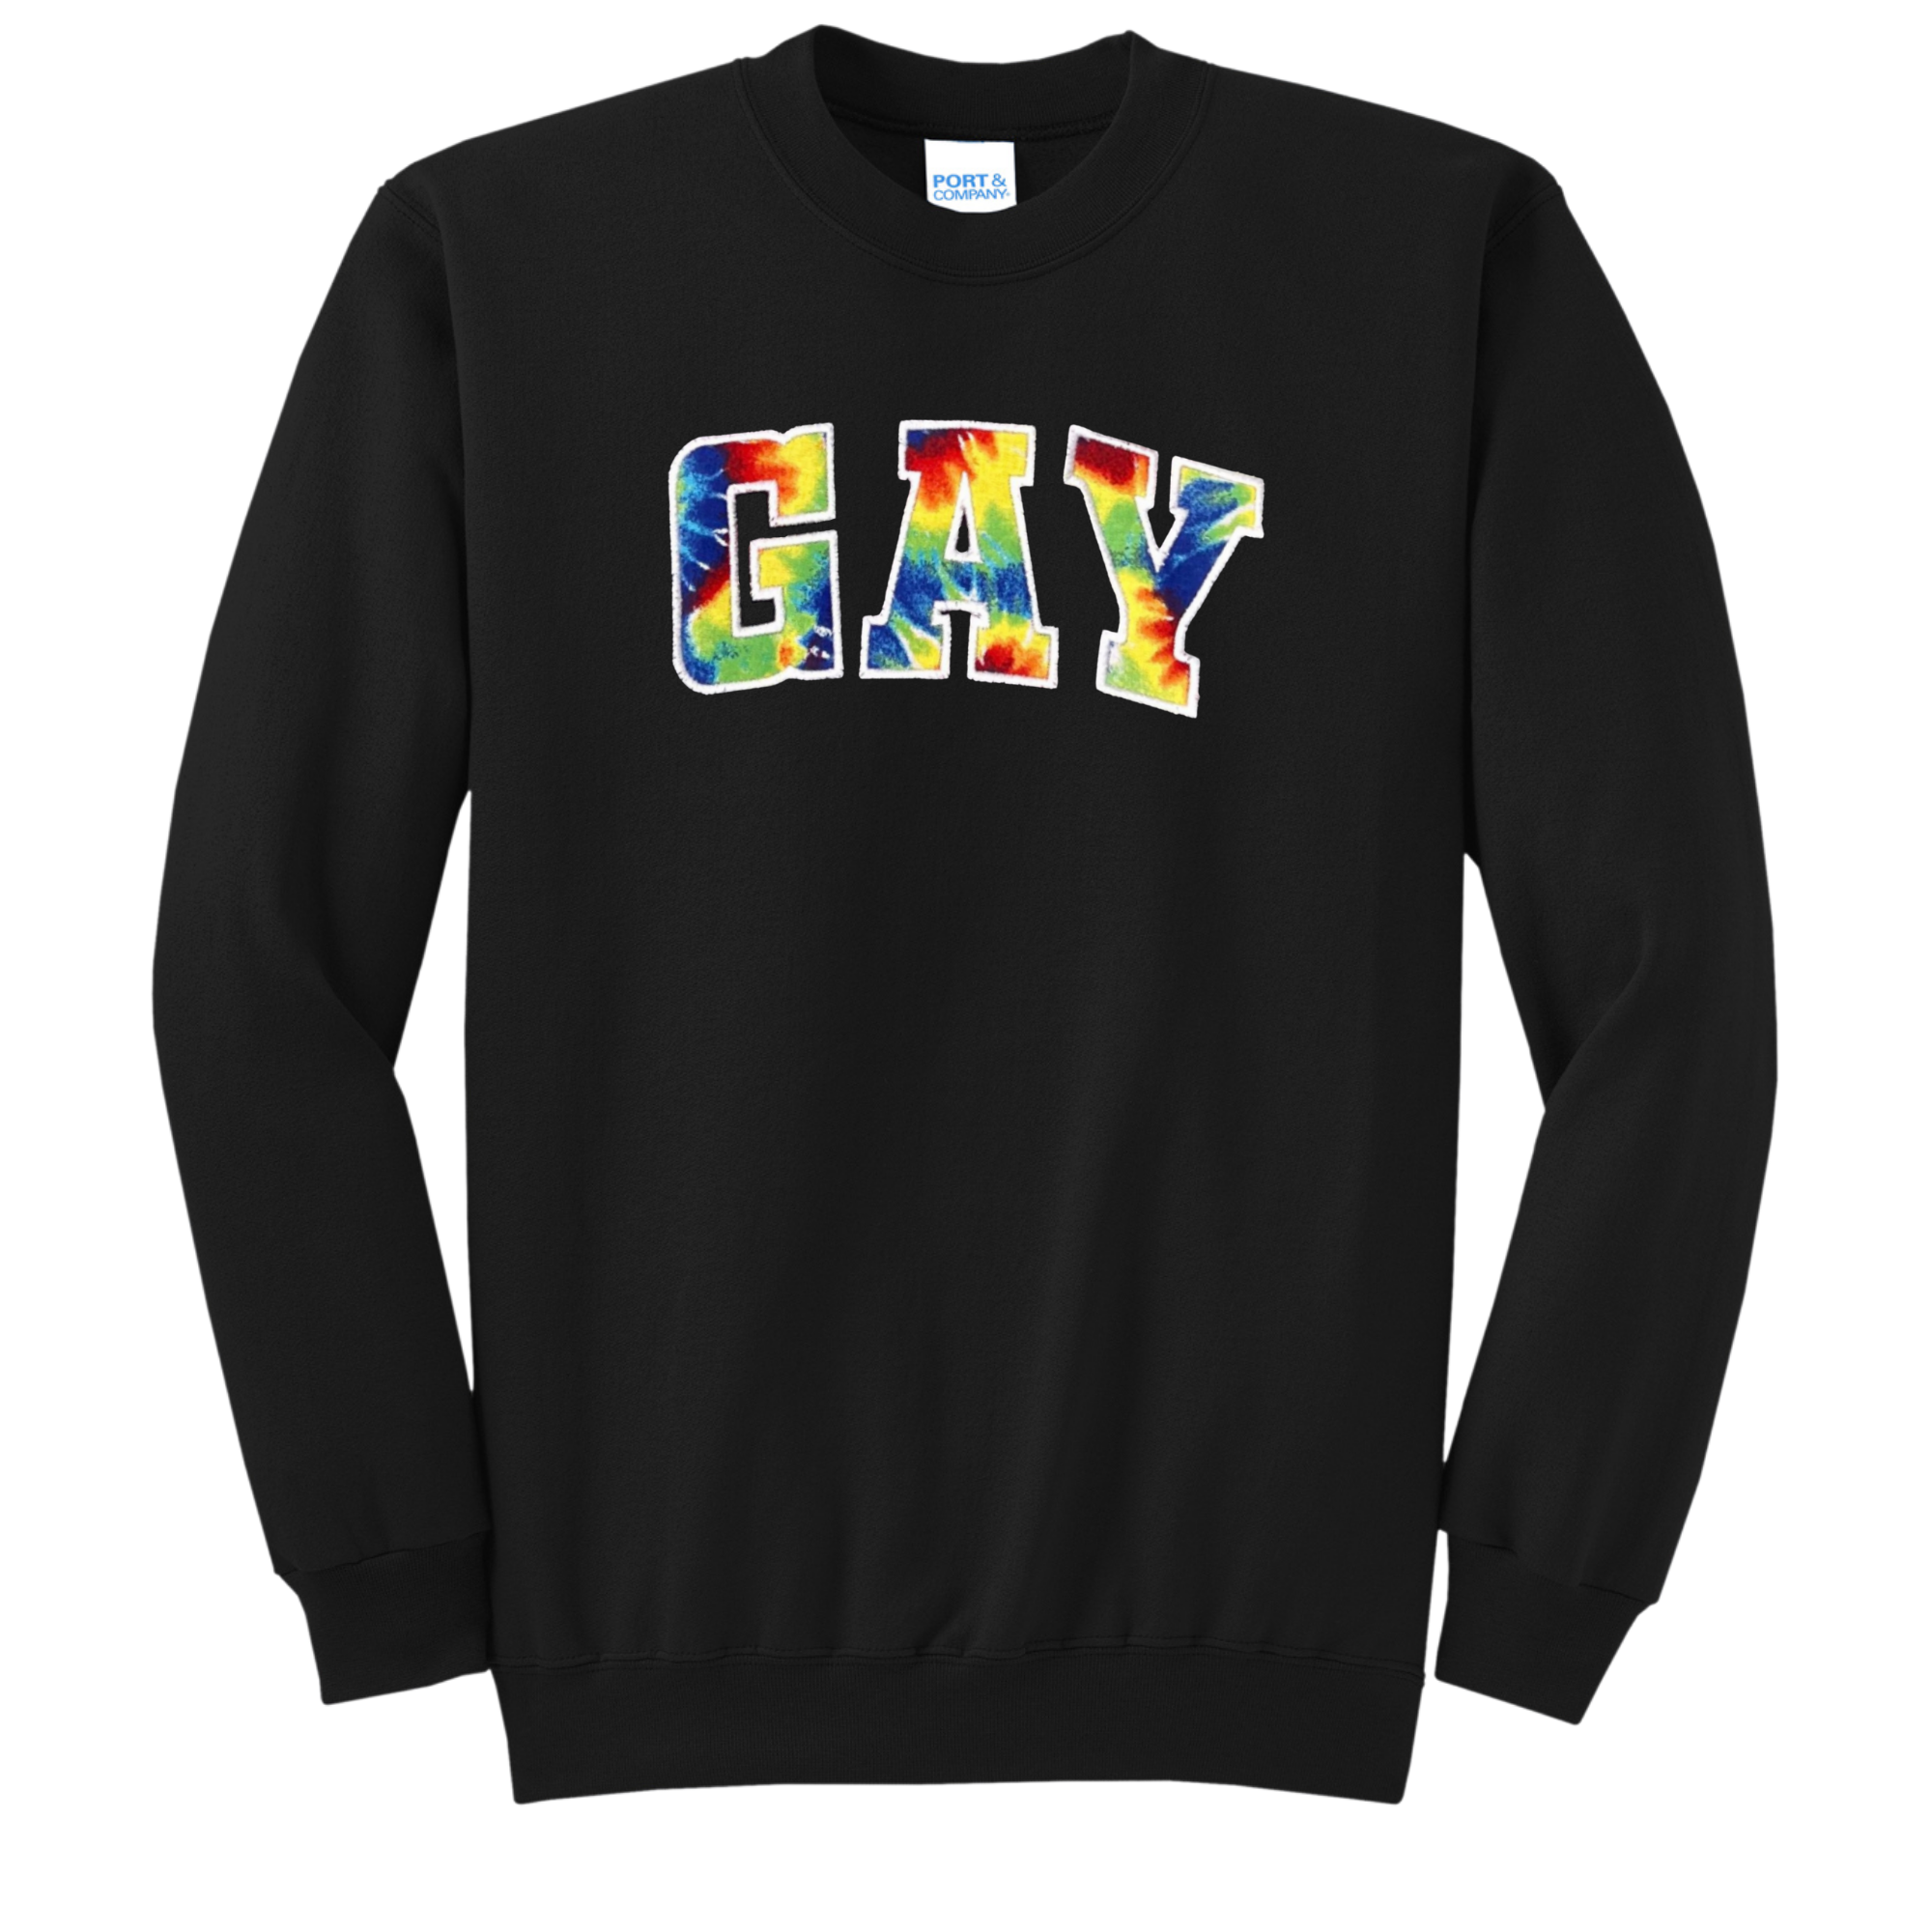 GAY Tie-Dye Applique Crewneck Sweatshirt, Black, Unisex